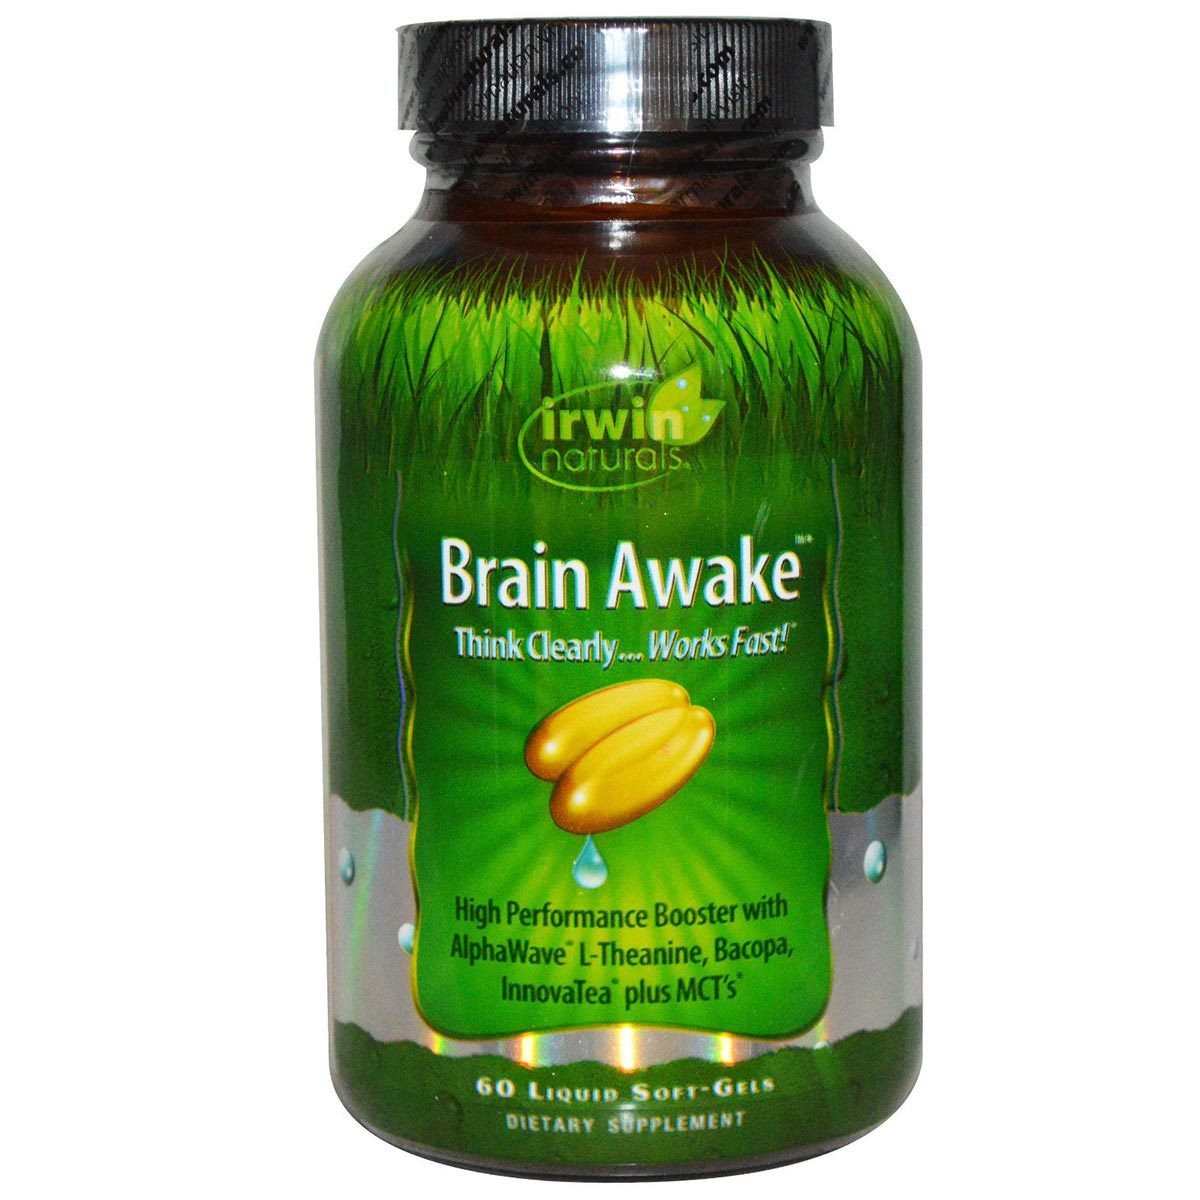 Image of Irwin Naturals Brain Awake 60 Liquid Soft Gels